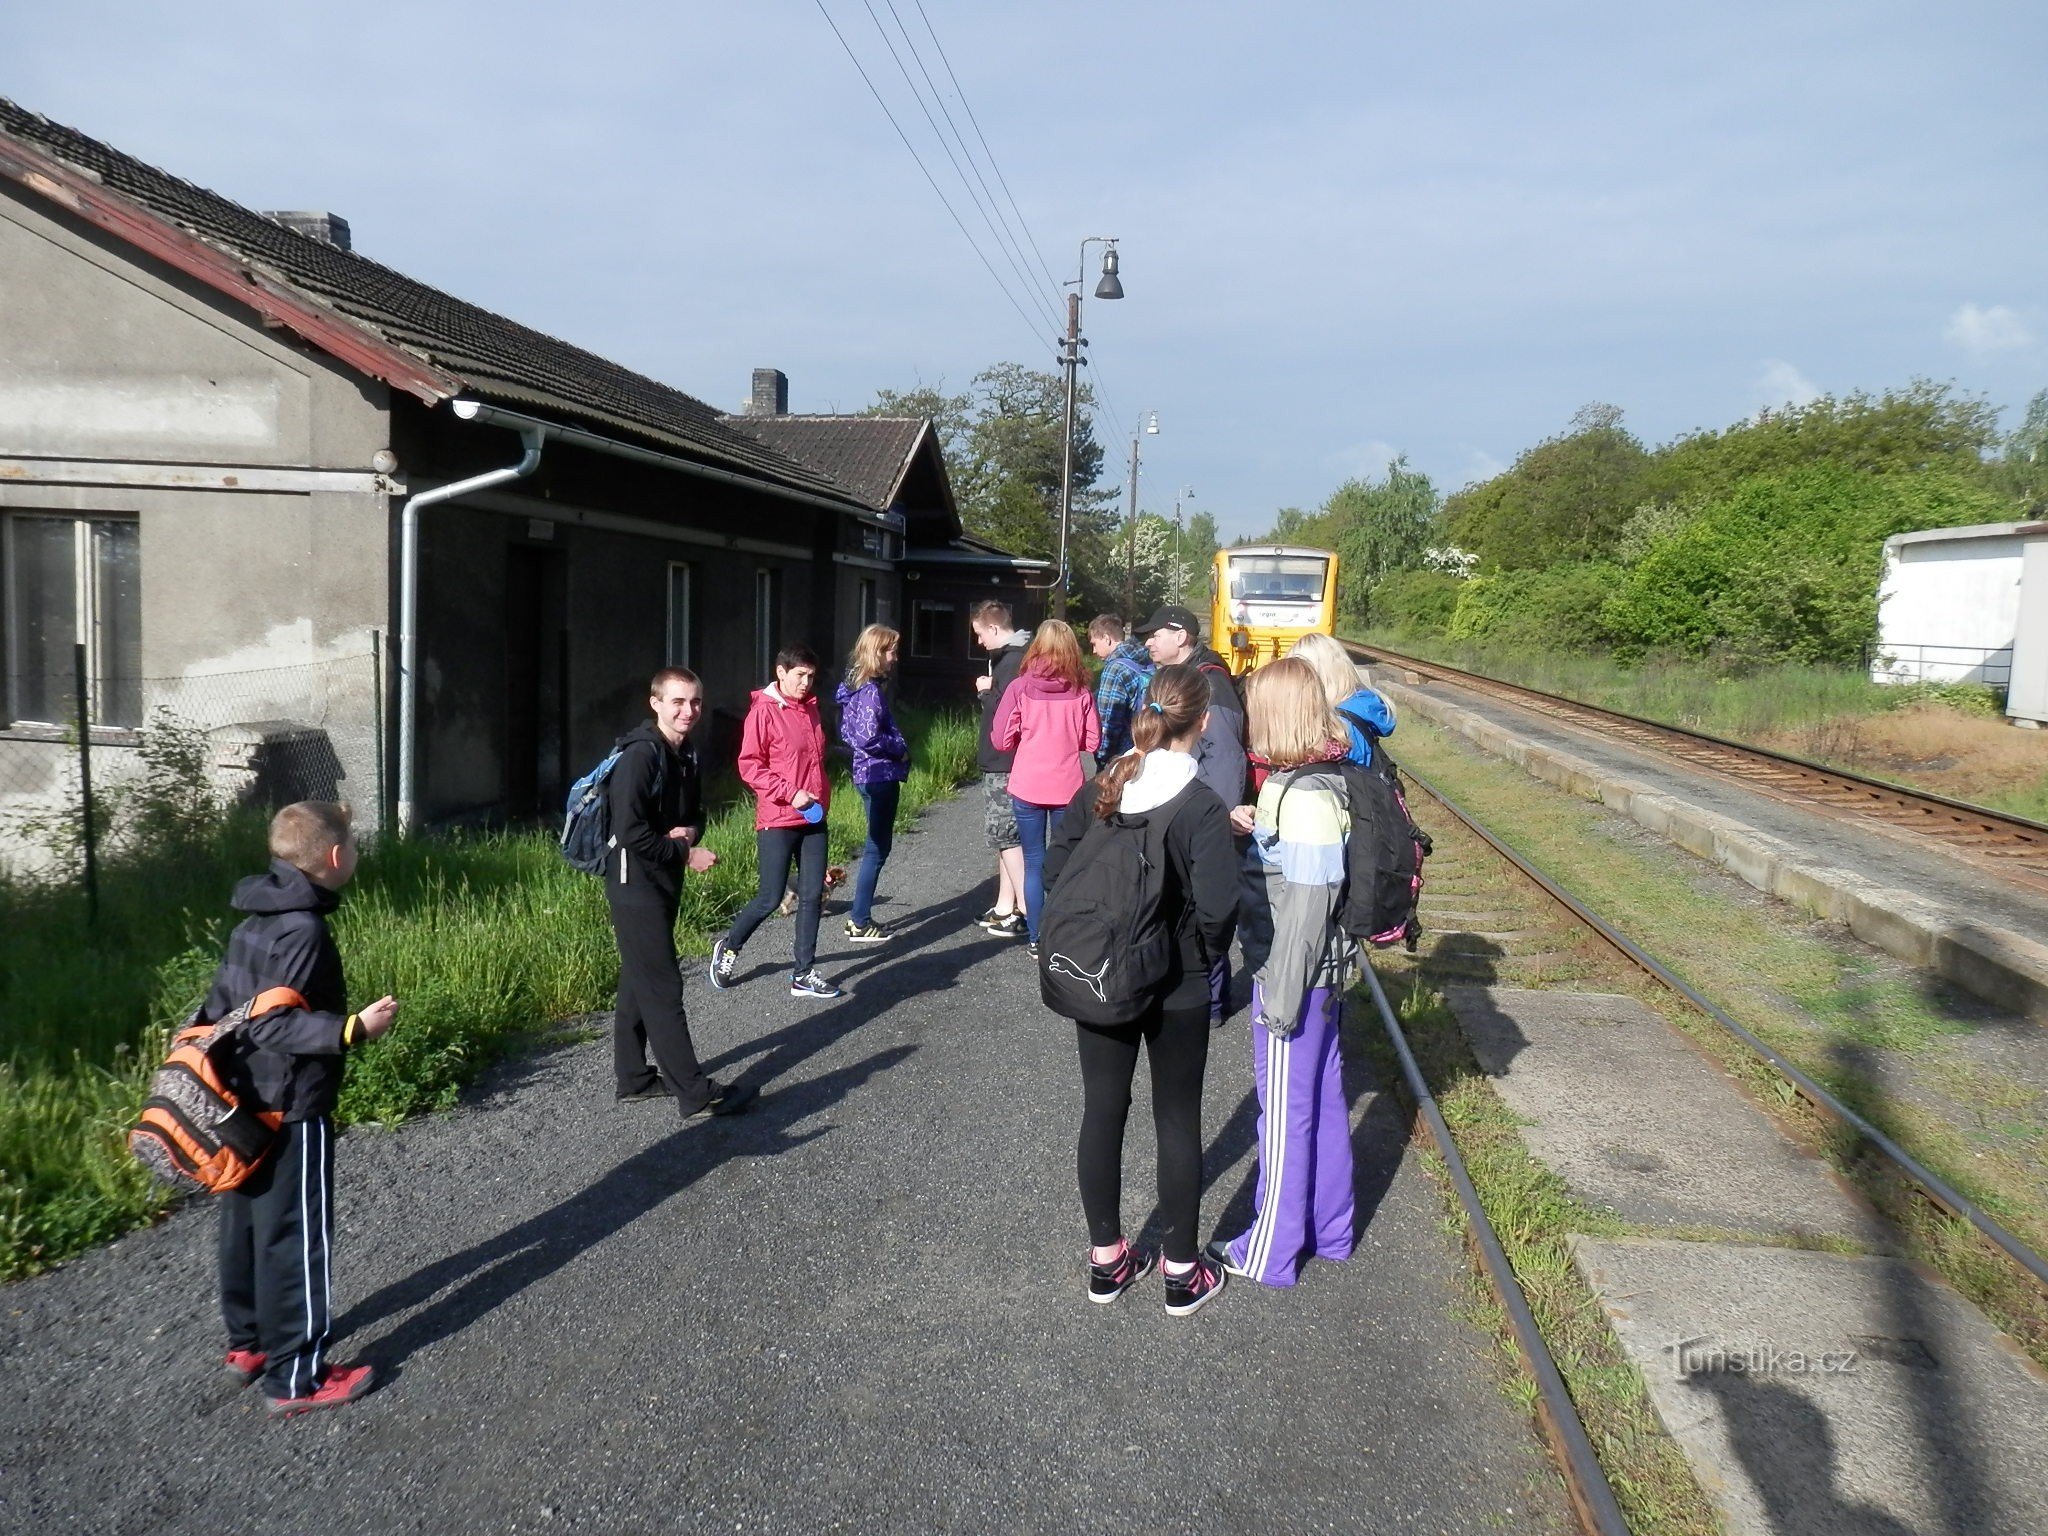 Onze reis naar het treinstation van Kladno Ostrovec